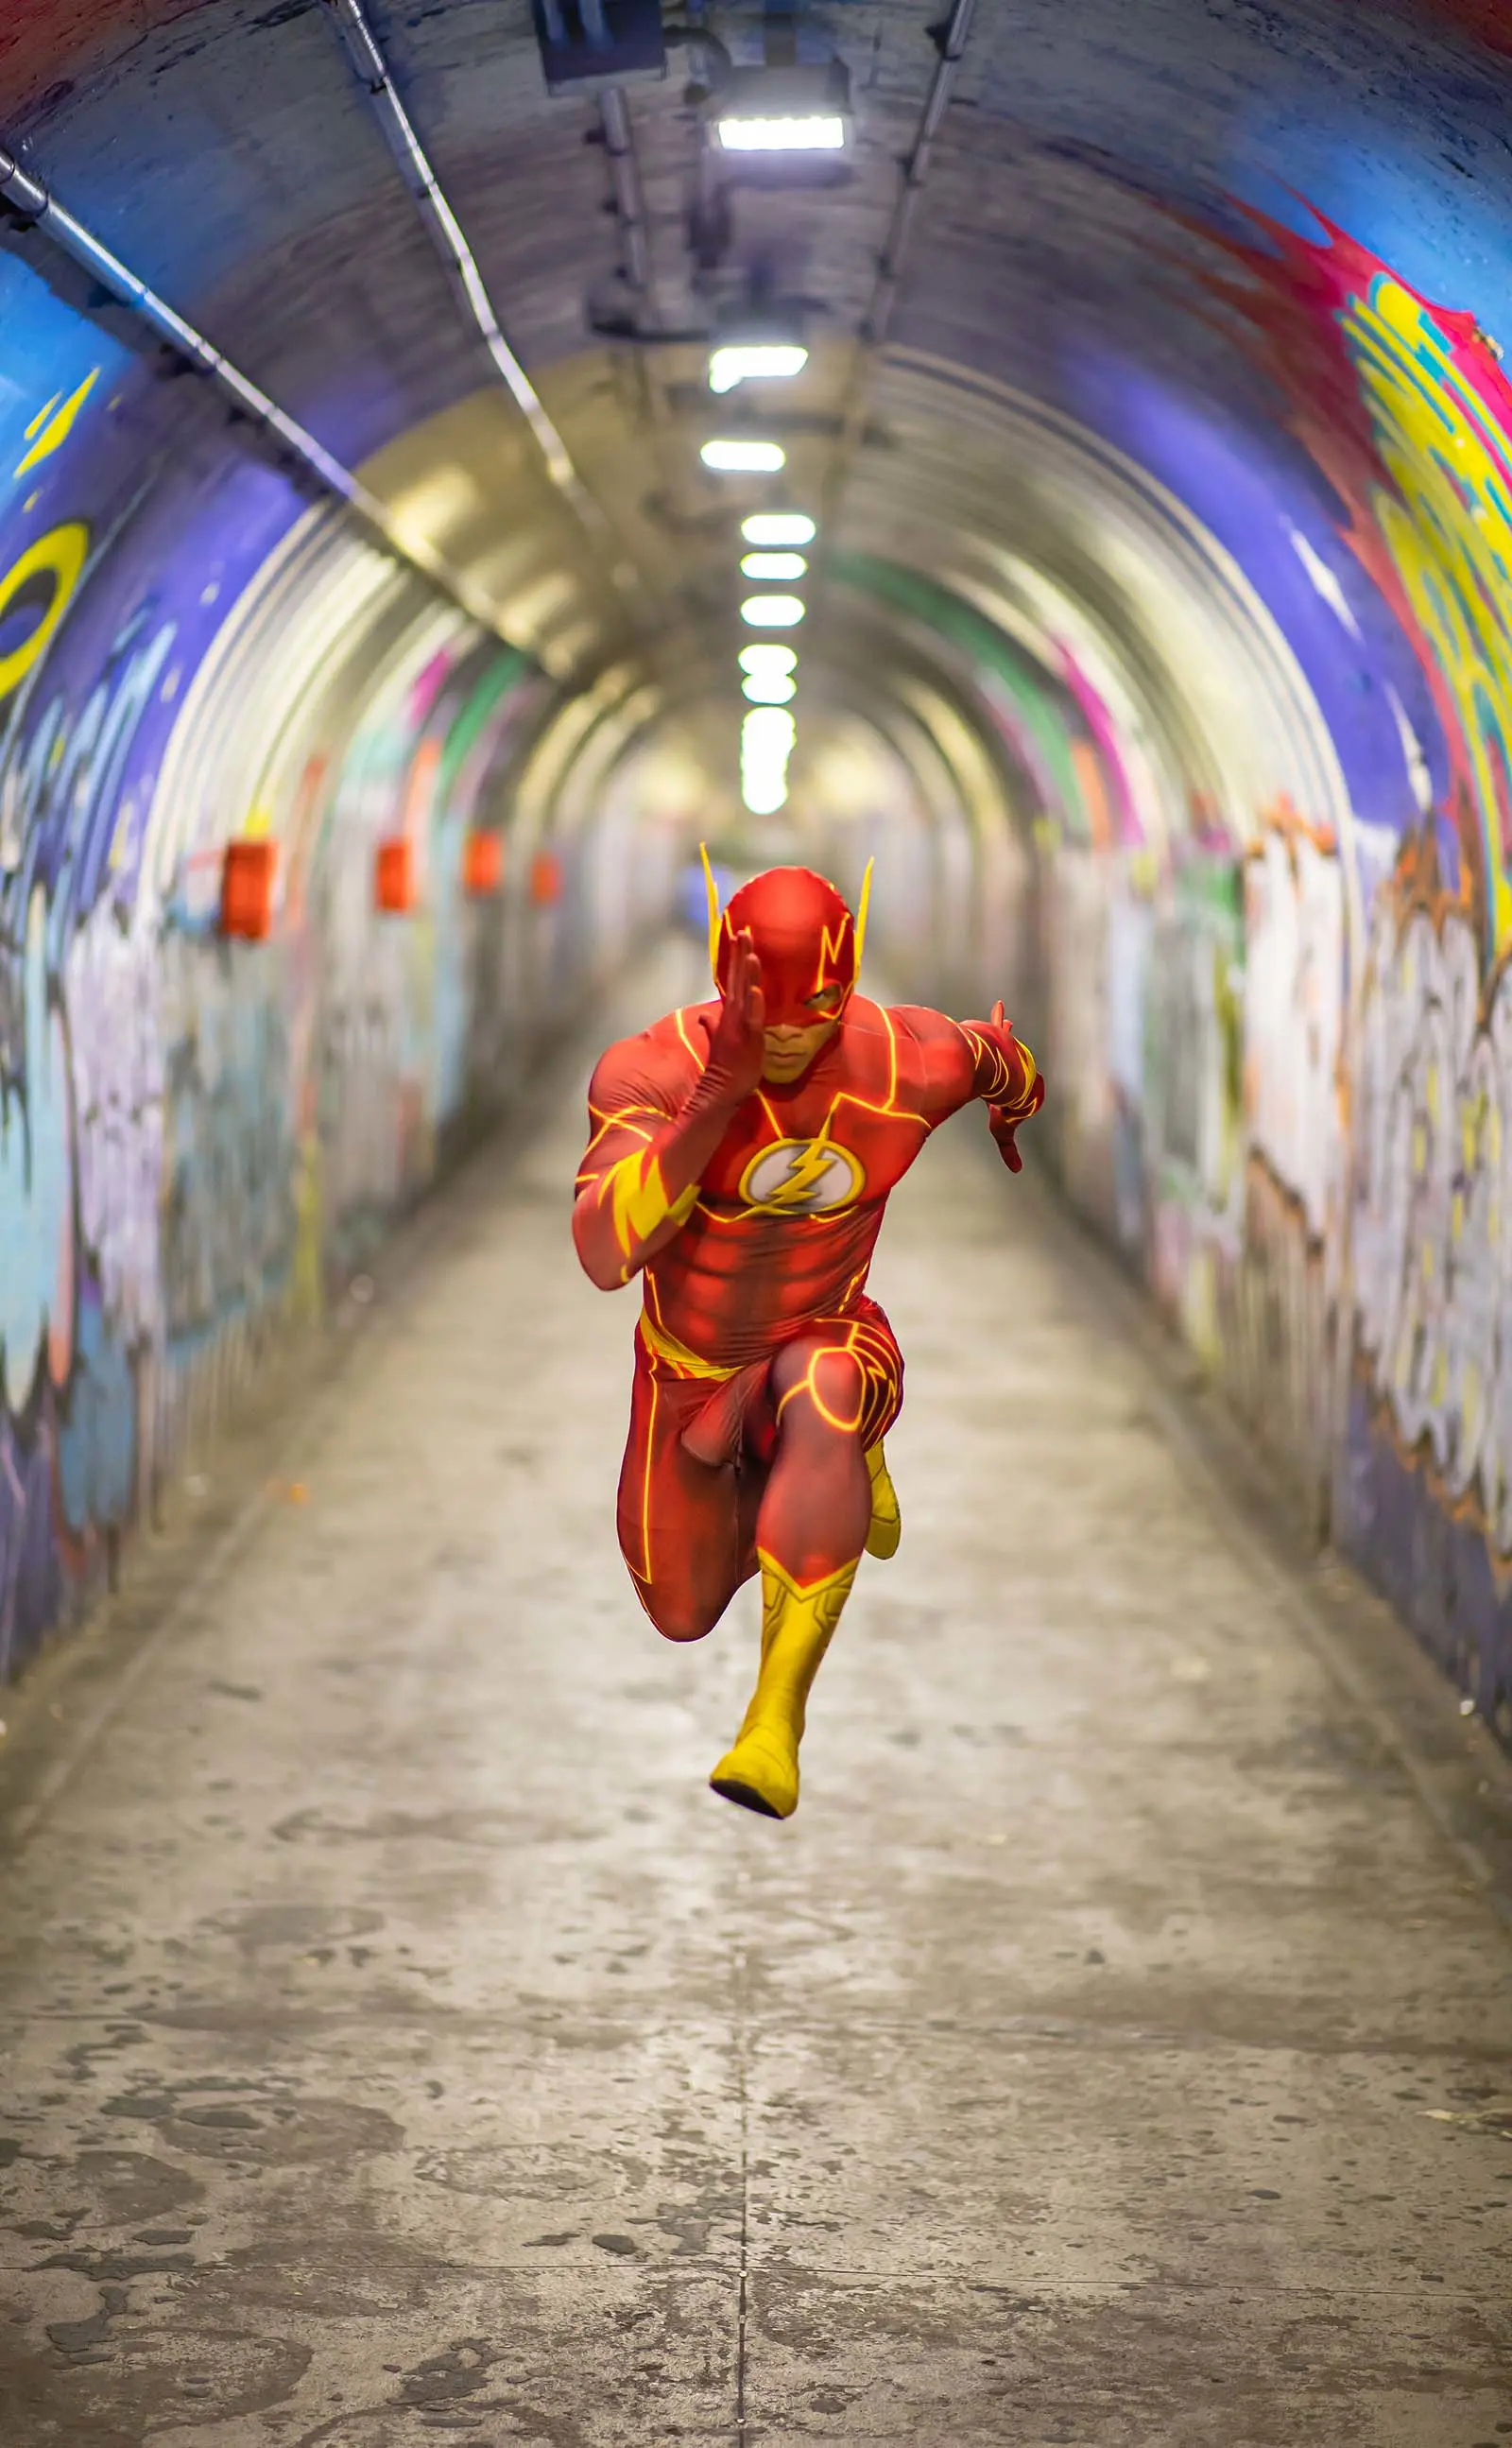 man dressed as flash running.